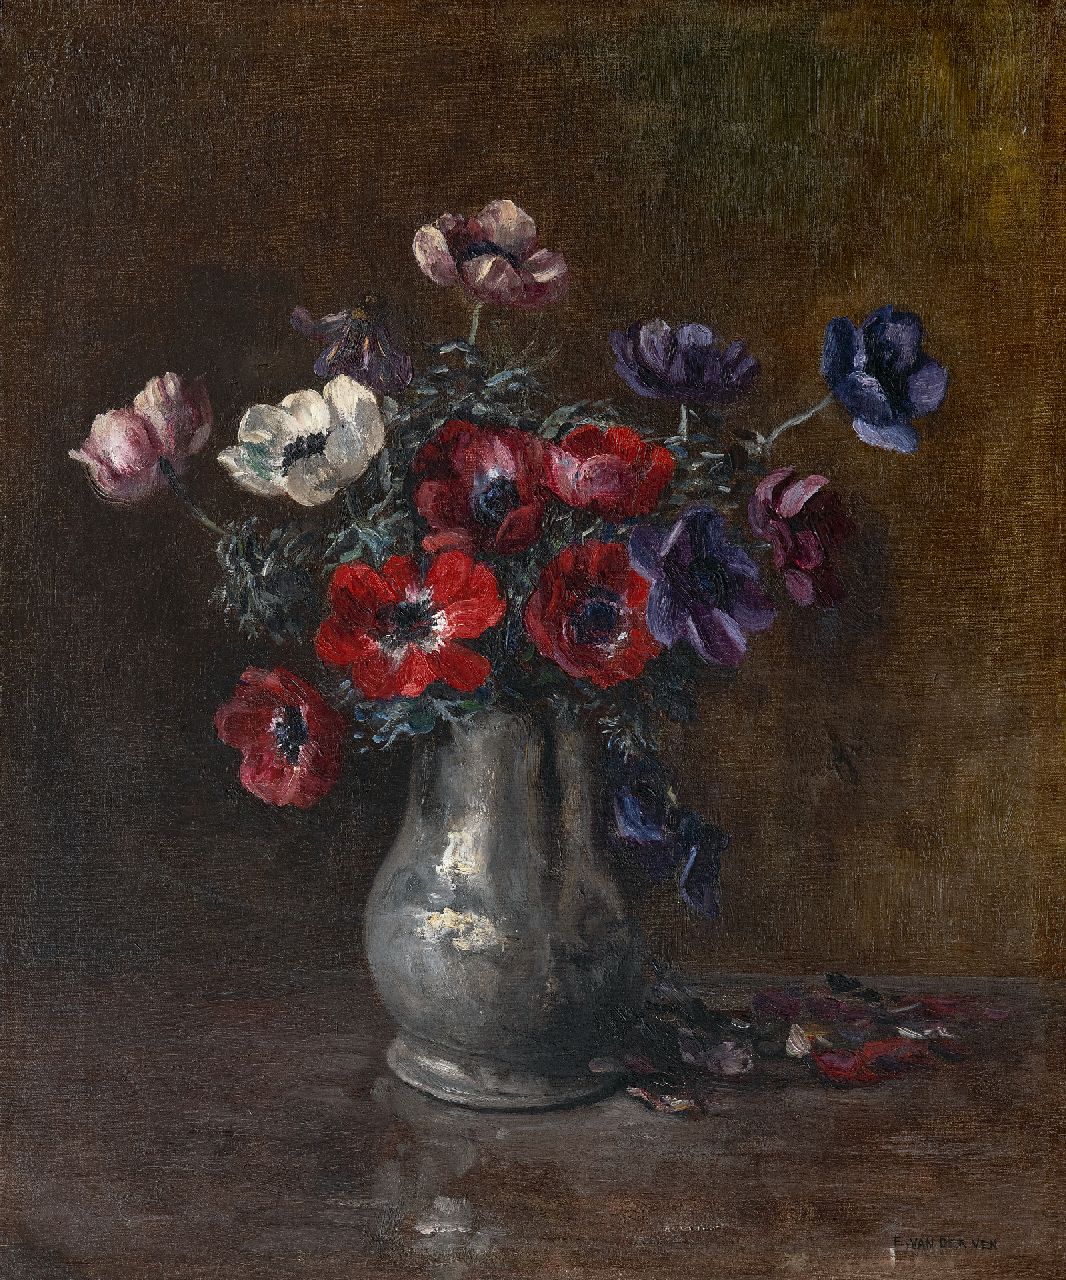 Ven E.E.G. van der | Emanuel Ernest Gerardus 'Manus' van der Ven | Paintings offered for sale | Pewter vase with anemones, oil on canvas 57.0 x 48.5 cm, signed l.r.